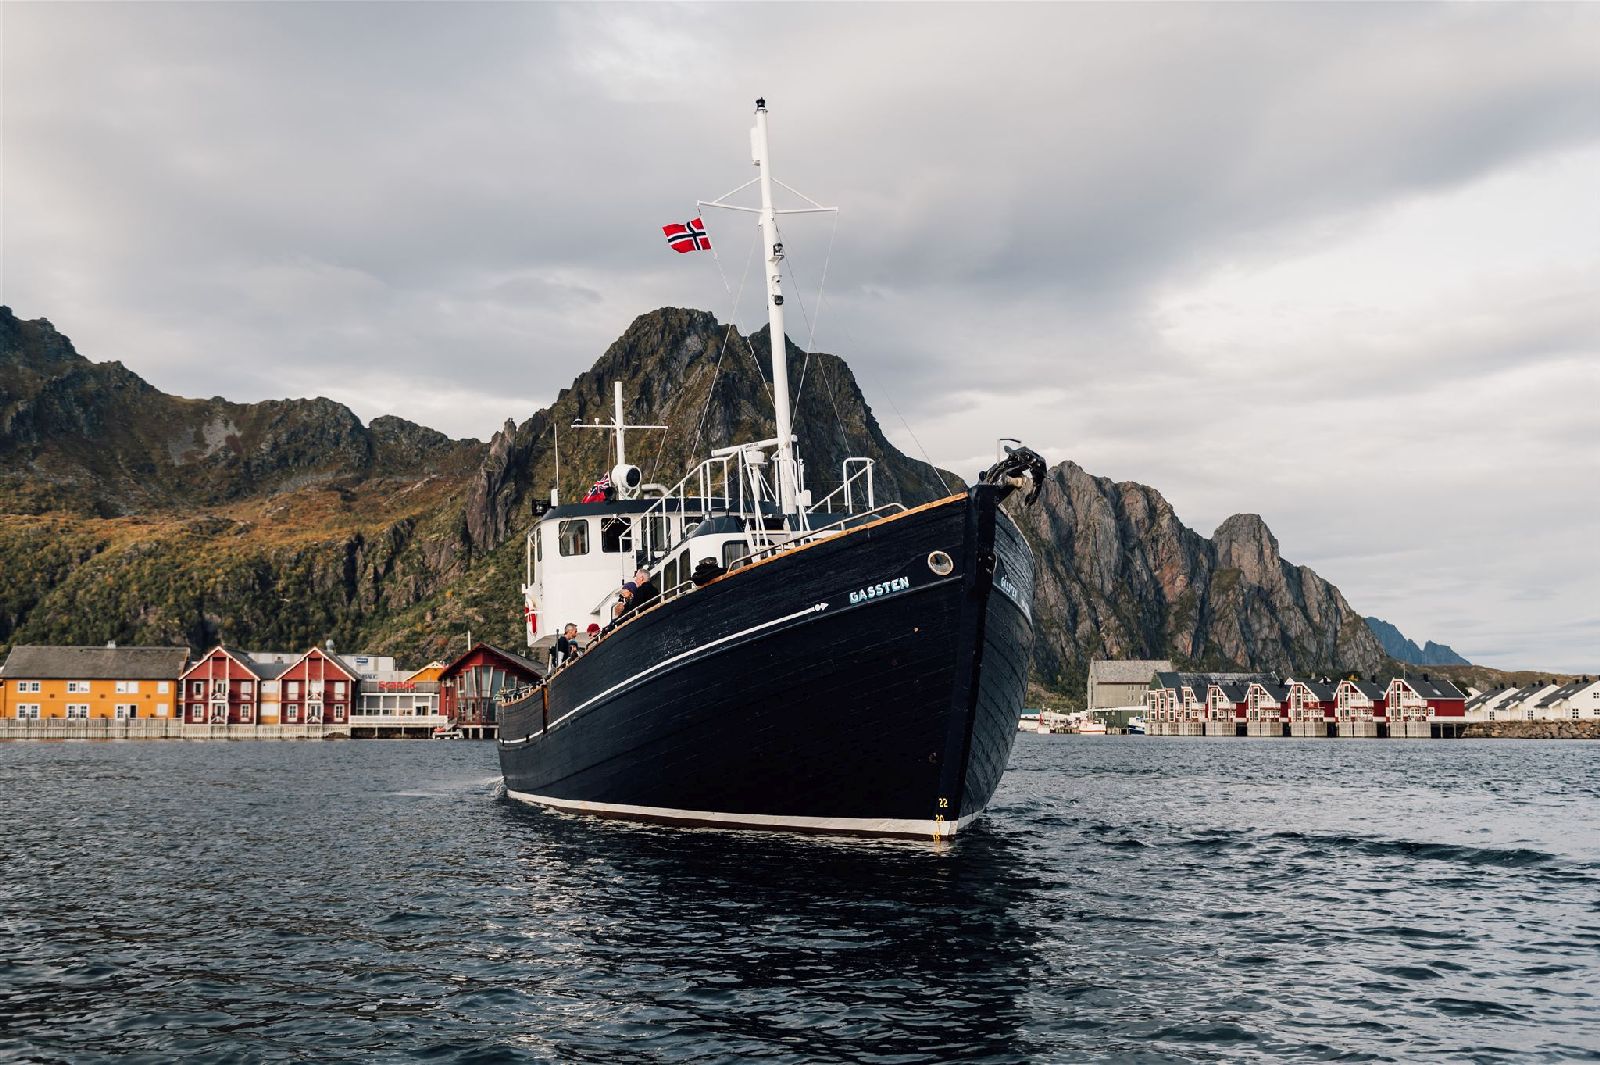 HMS Gassten sailing around the Lofoten Islands in Norway